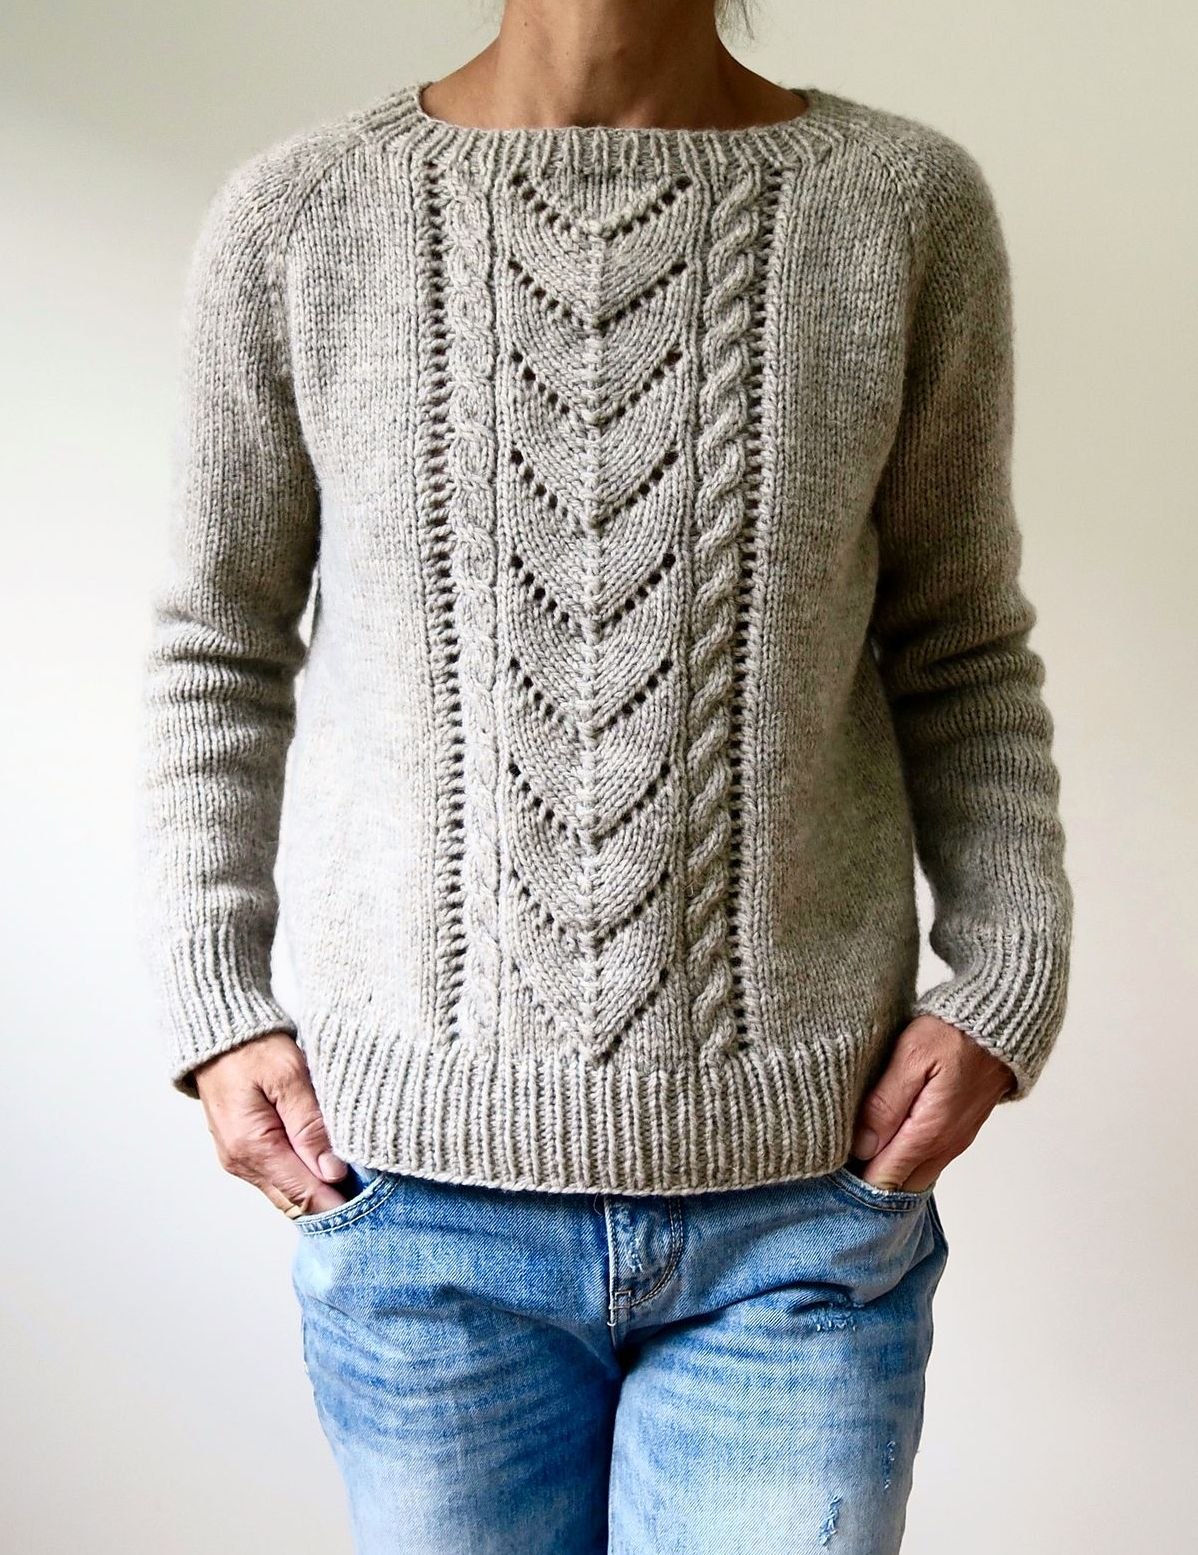 Джемпер реглан. Пуловер реглан Avalanche. Узор для свитера. Вязаный свитер реглан. Свитер с центральным узором.